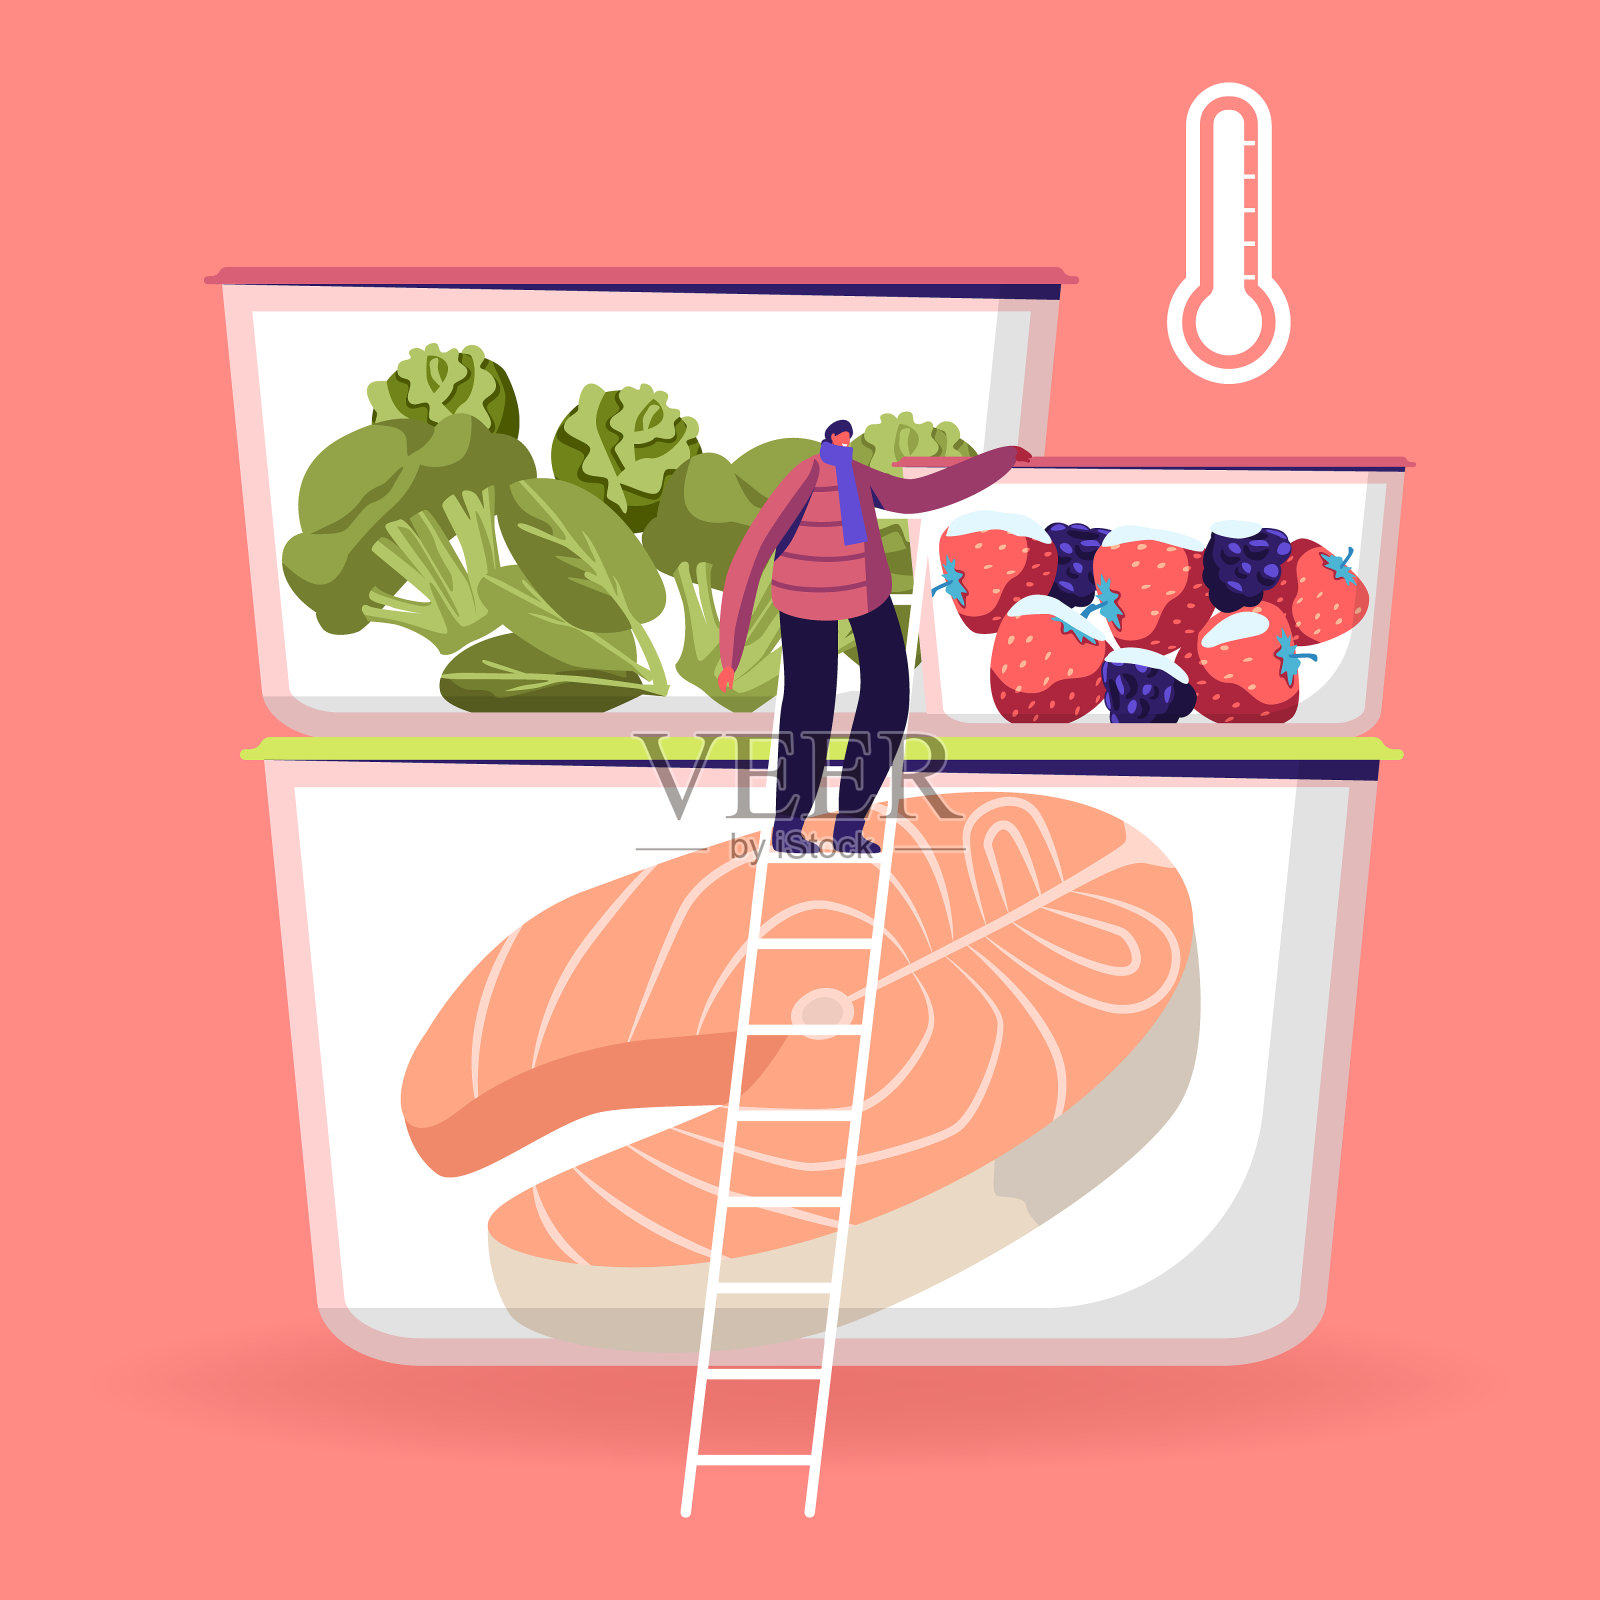 小小的男性角色穿着冬天的衣服和围巾站在梯子附近的冰箱容器不同的冷冻食品，新鲜的浆果，蔬菜和鱼卡通平面矢量插图插画图片素材